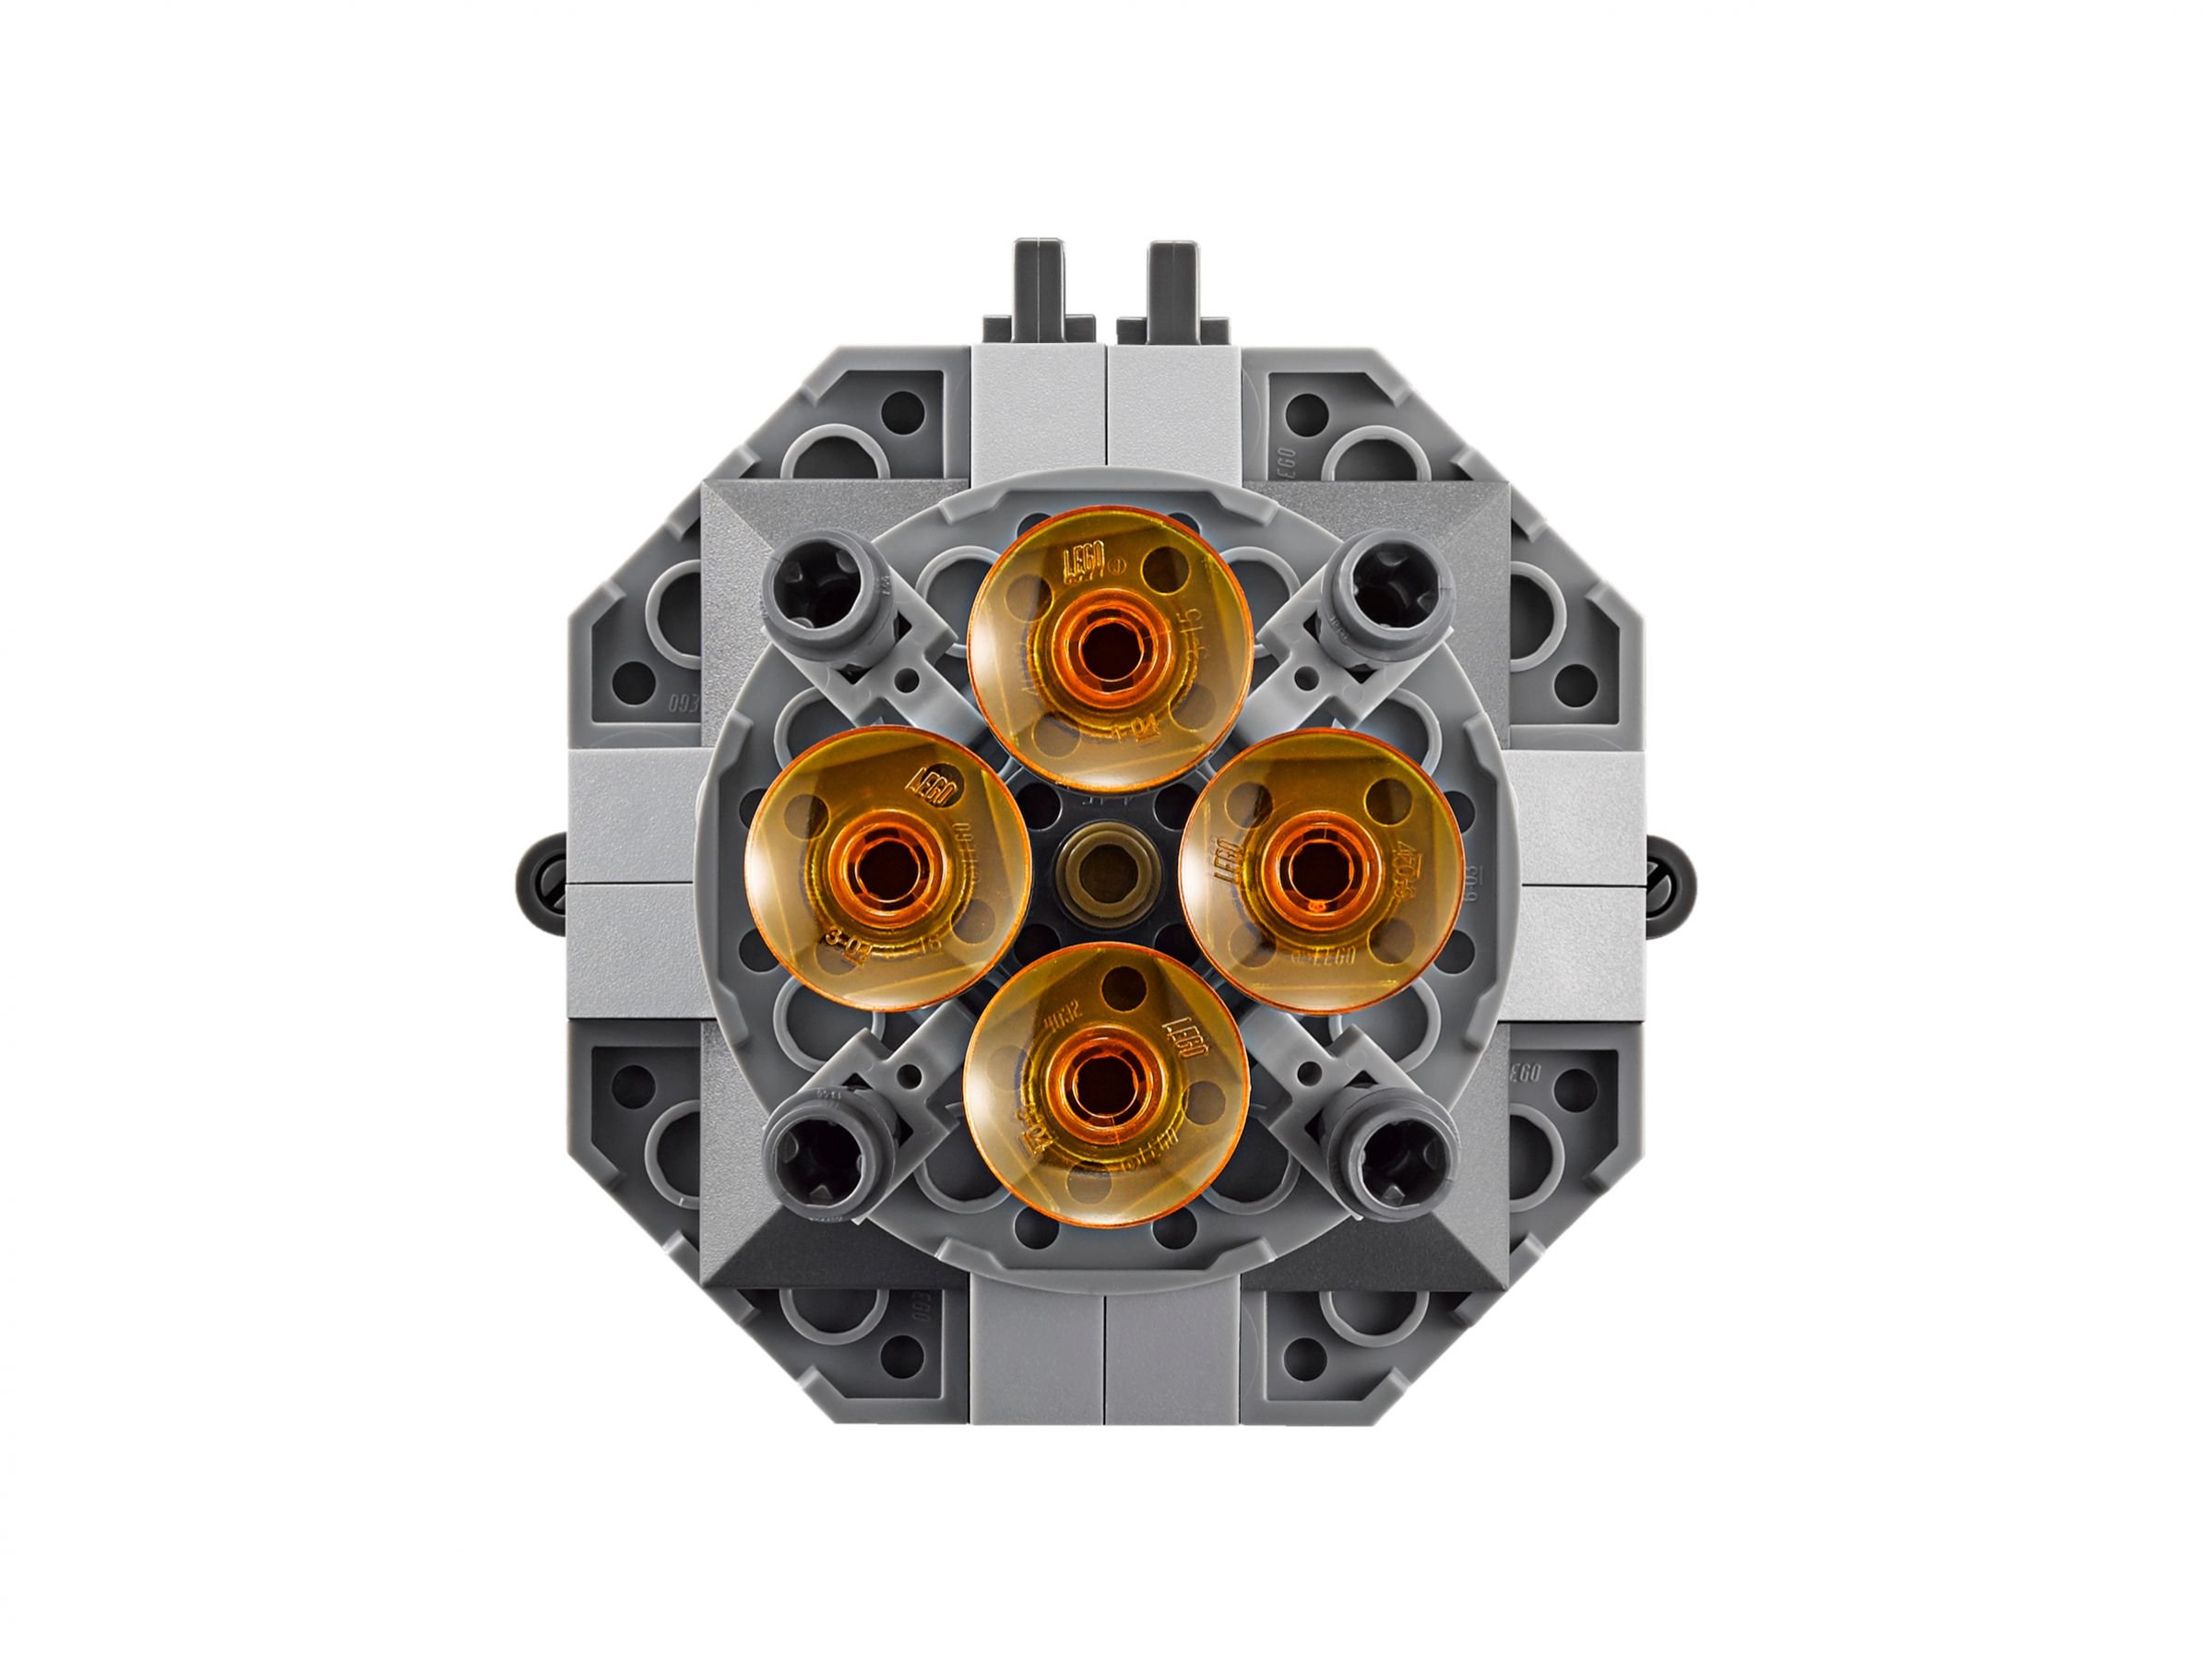 LEGO Star Wars 75136 Droid™ Escape Pod LEGO_75136_alt7.jpg